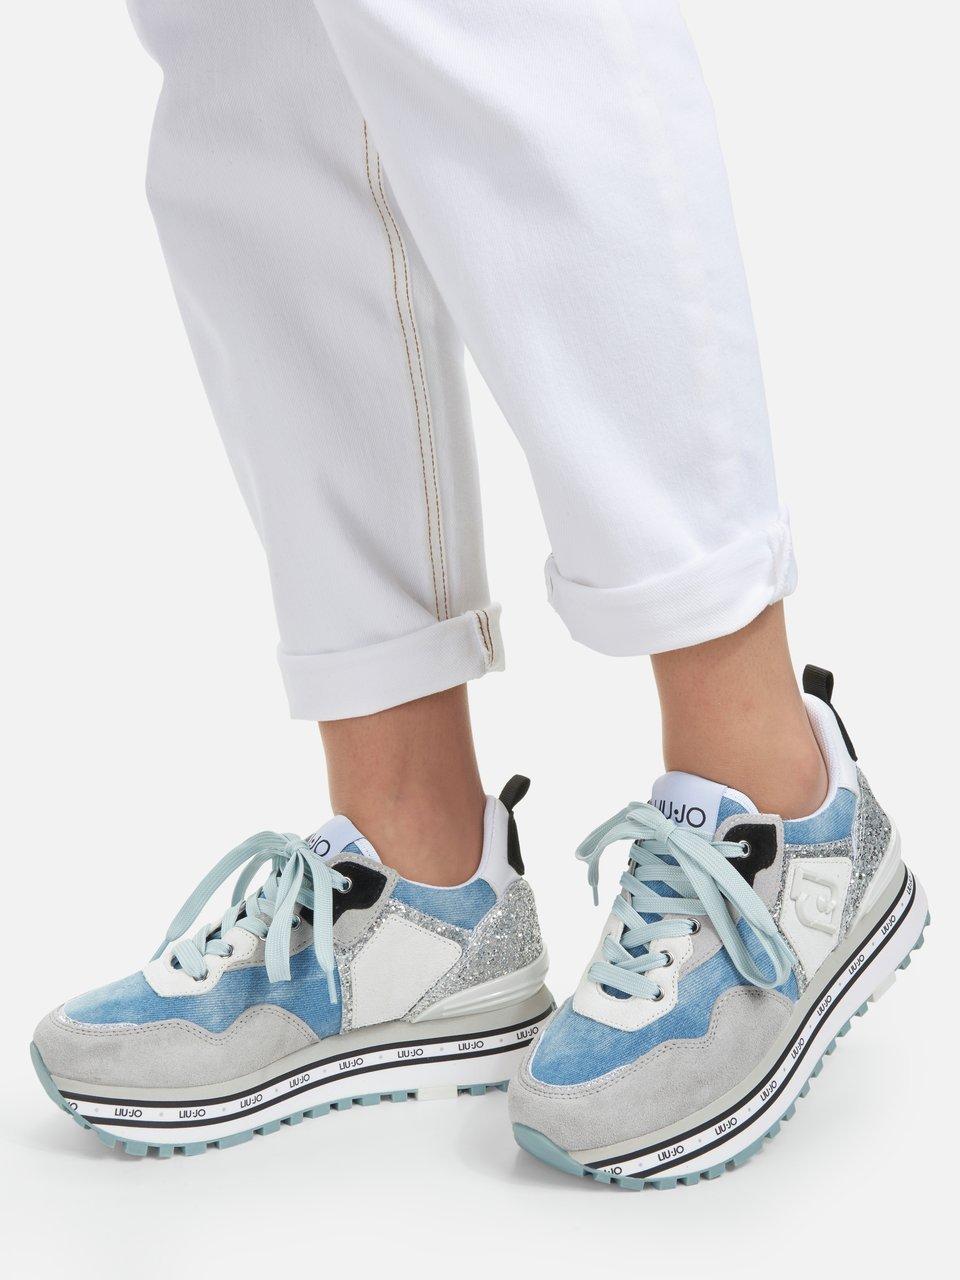 Liu Sneakers denim blue/white